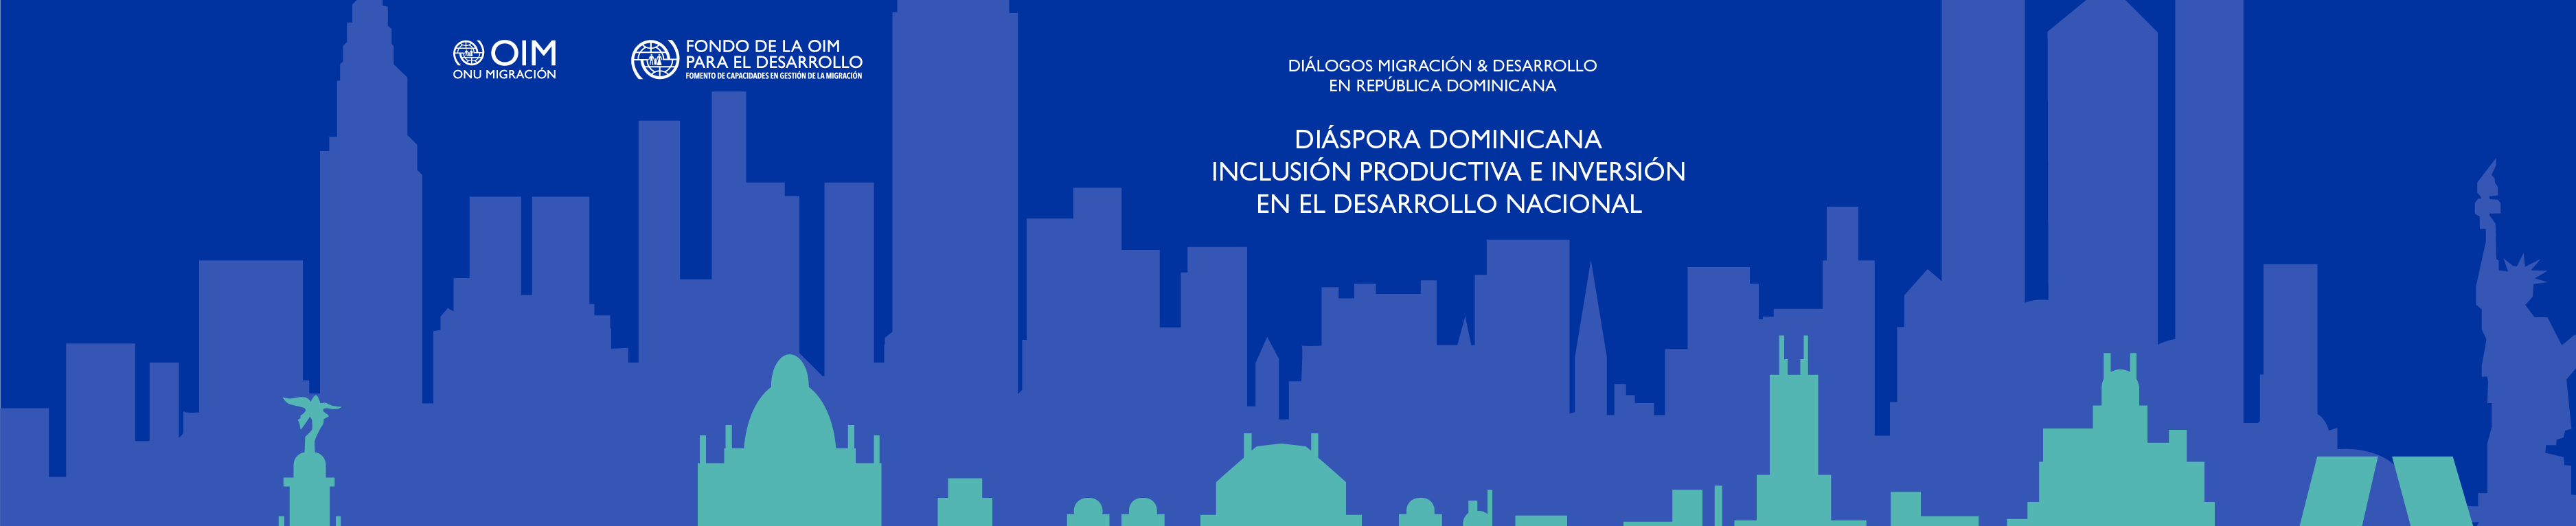 Diáspora Dominicana inclusión productiva e inversión en el desarrollo nacional